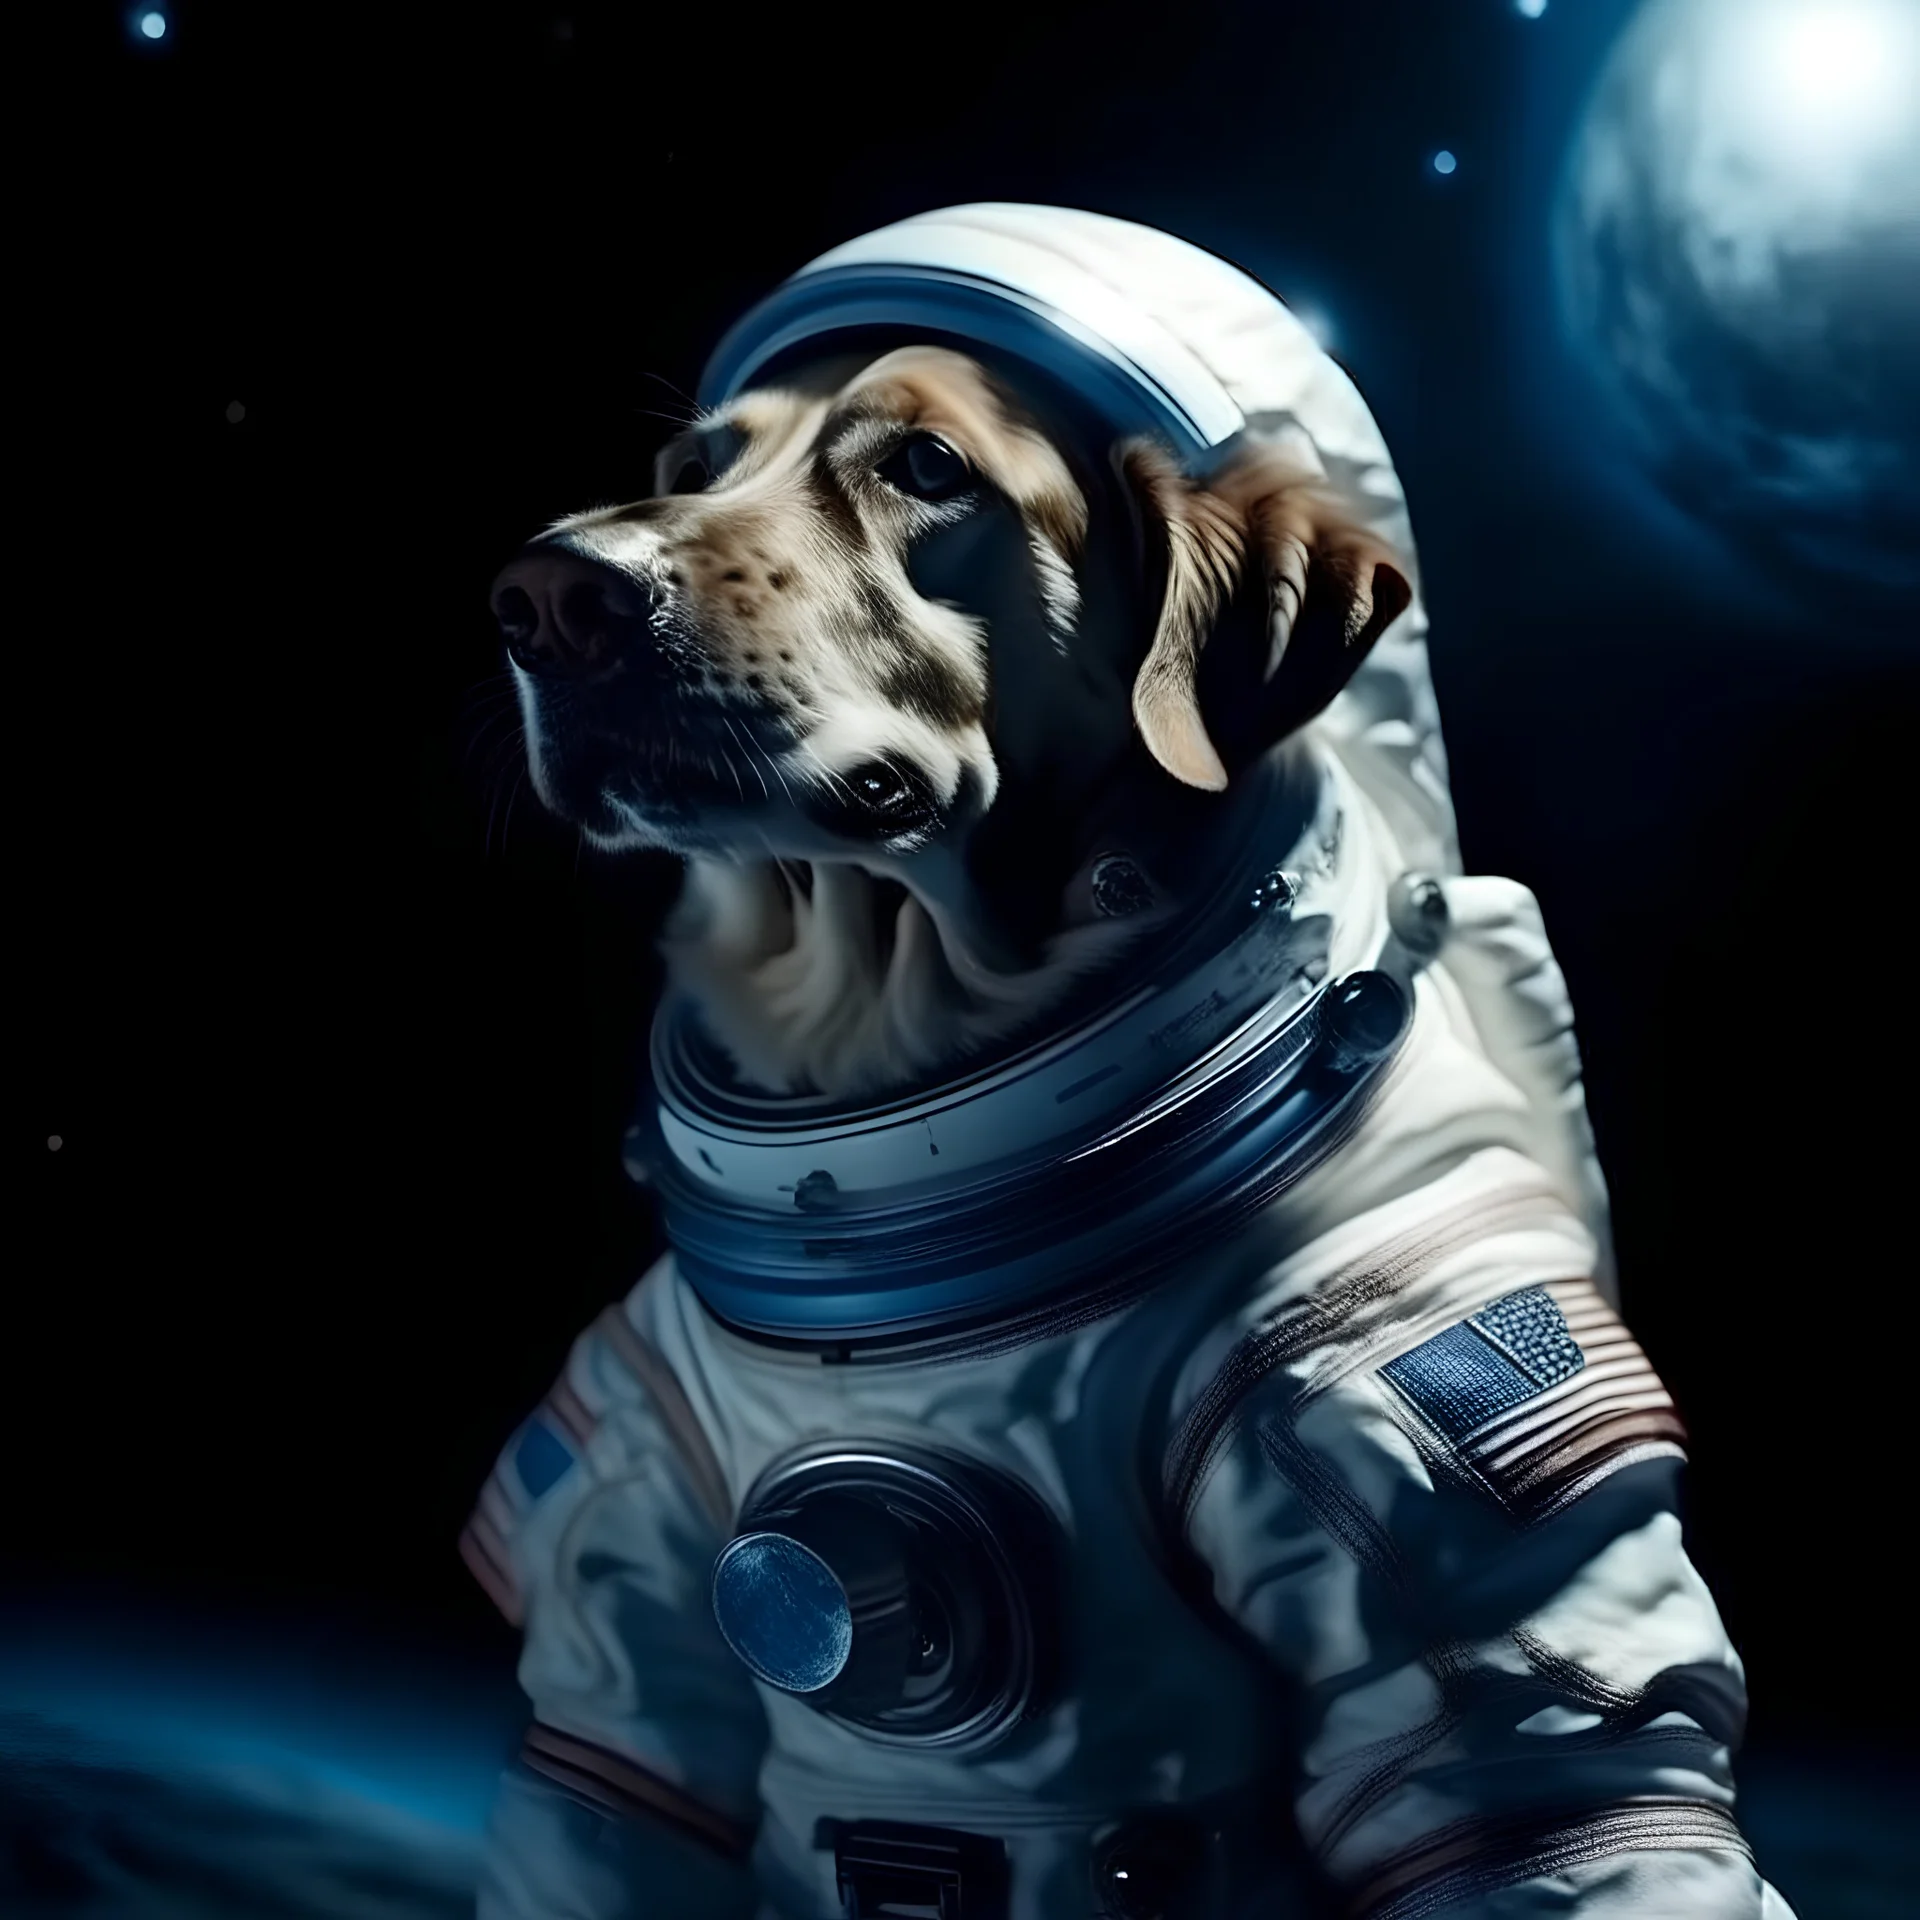 primer plano de un perro salchicha astronauta, con traje gtis,fondo de paisaje la luna contraluz, atmosfera de universo